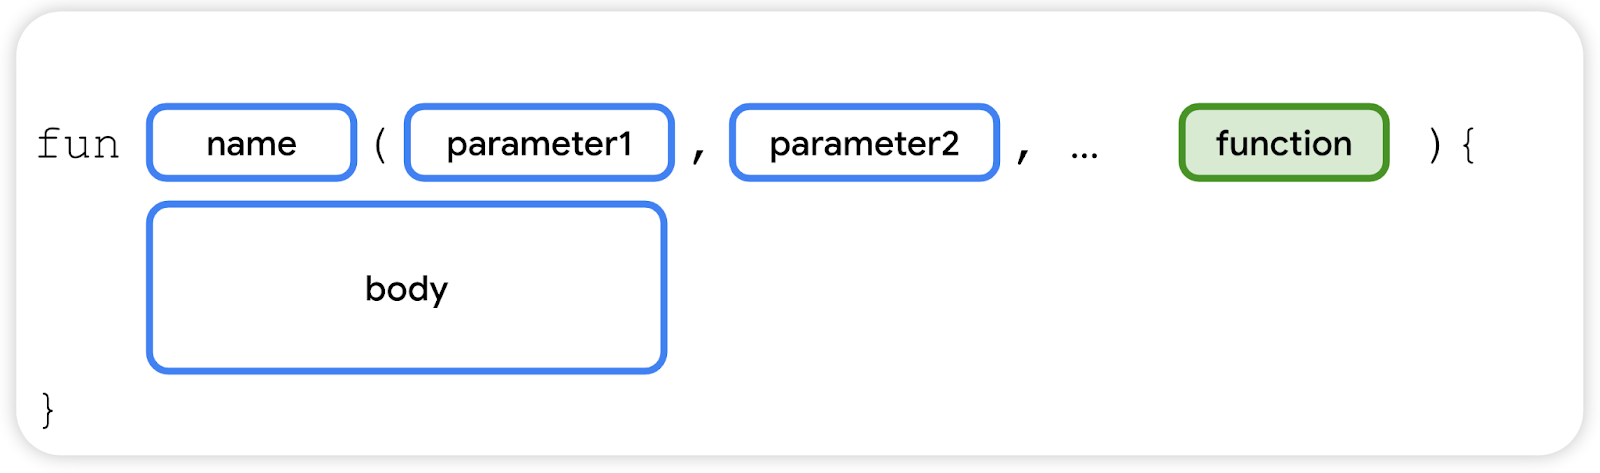 parameter fungsi adalah parameter terakhir